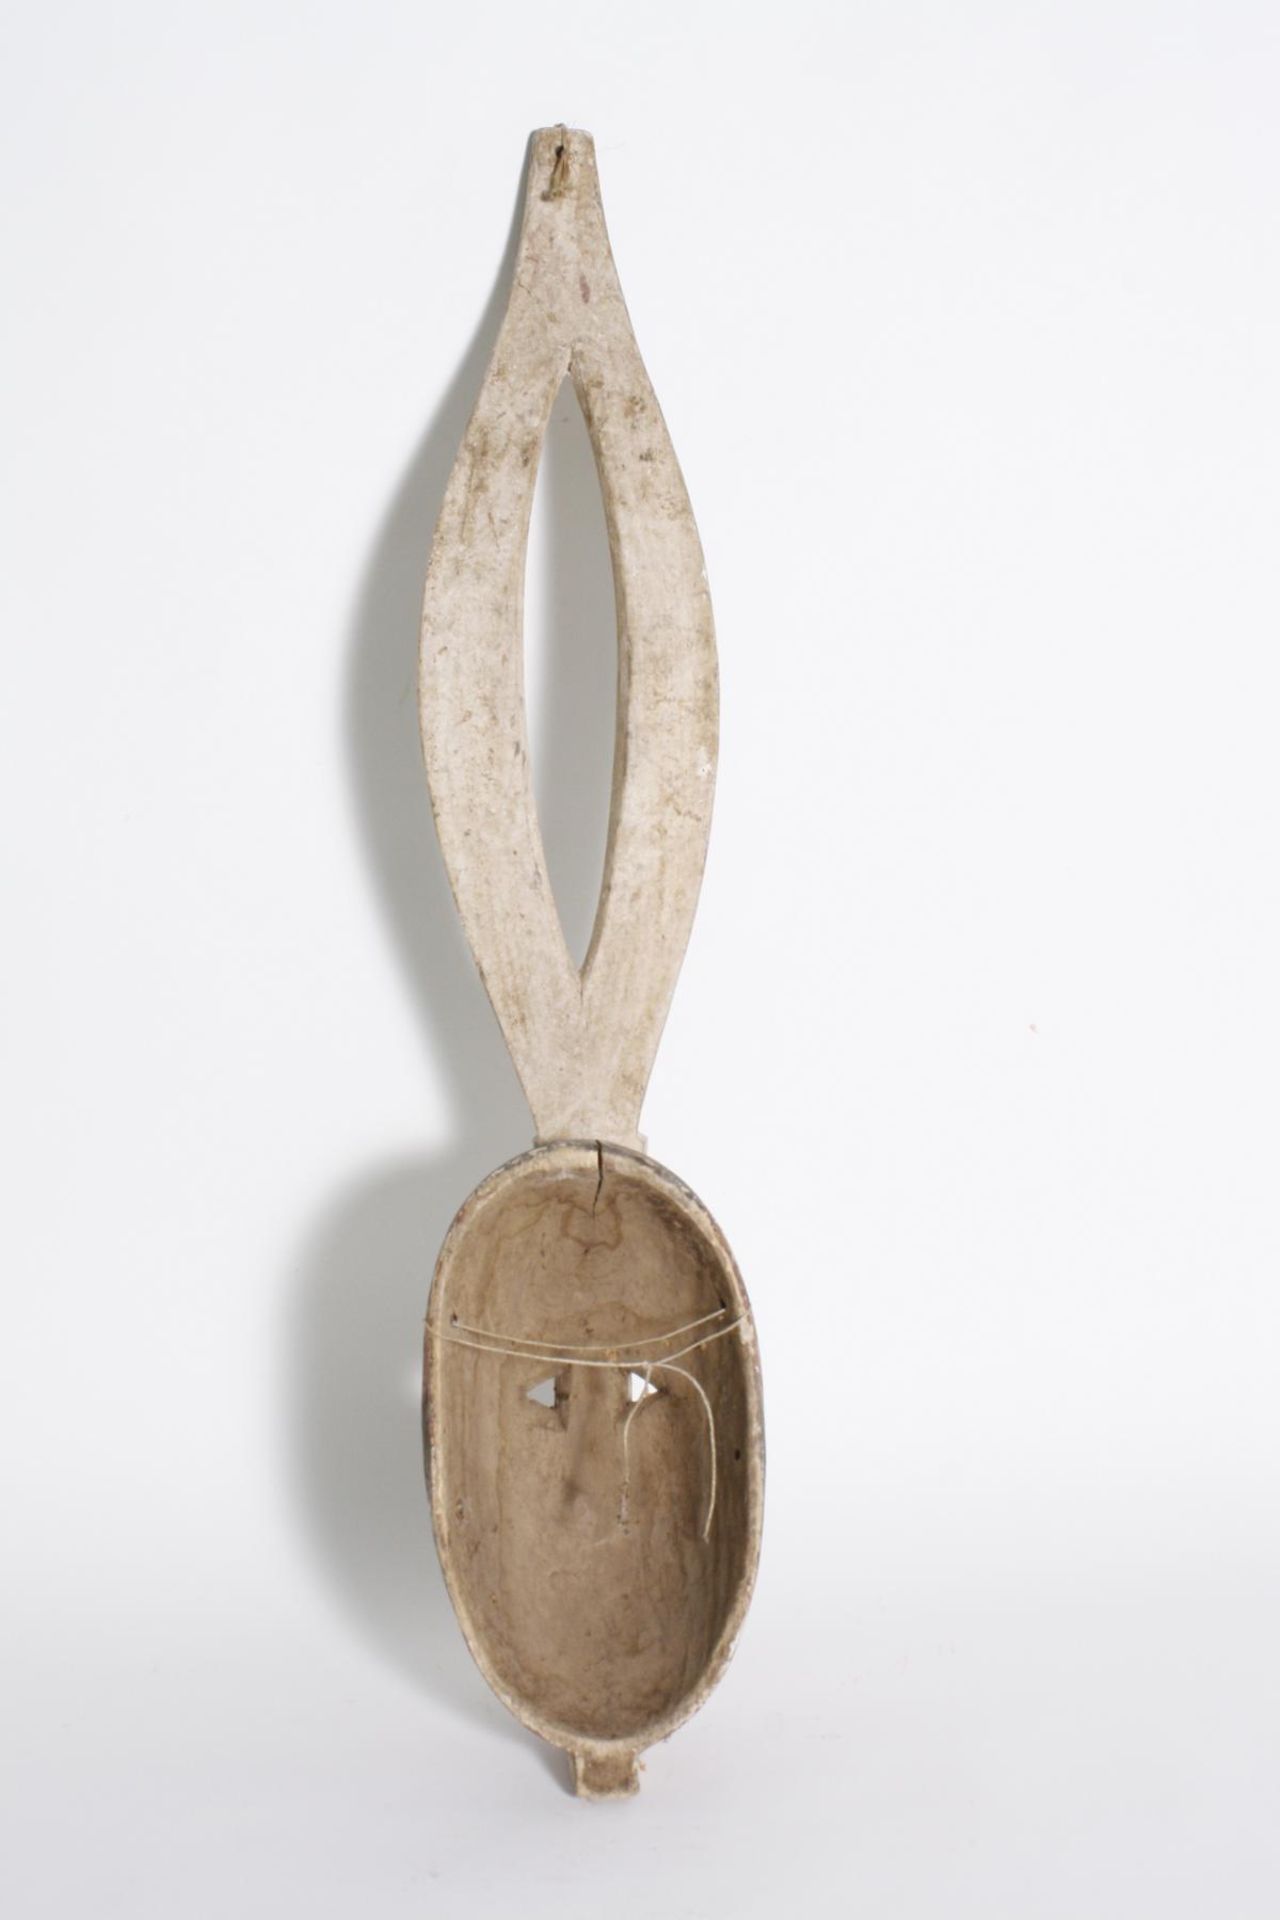 Antilopenmaske, Mossi, Burkina Faso, 2. Hälfte 20. Jh.Aus einem Stück Holz geschnitzte - Bild 2 aus 4